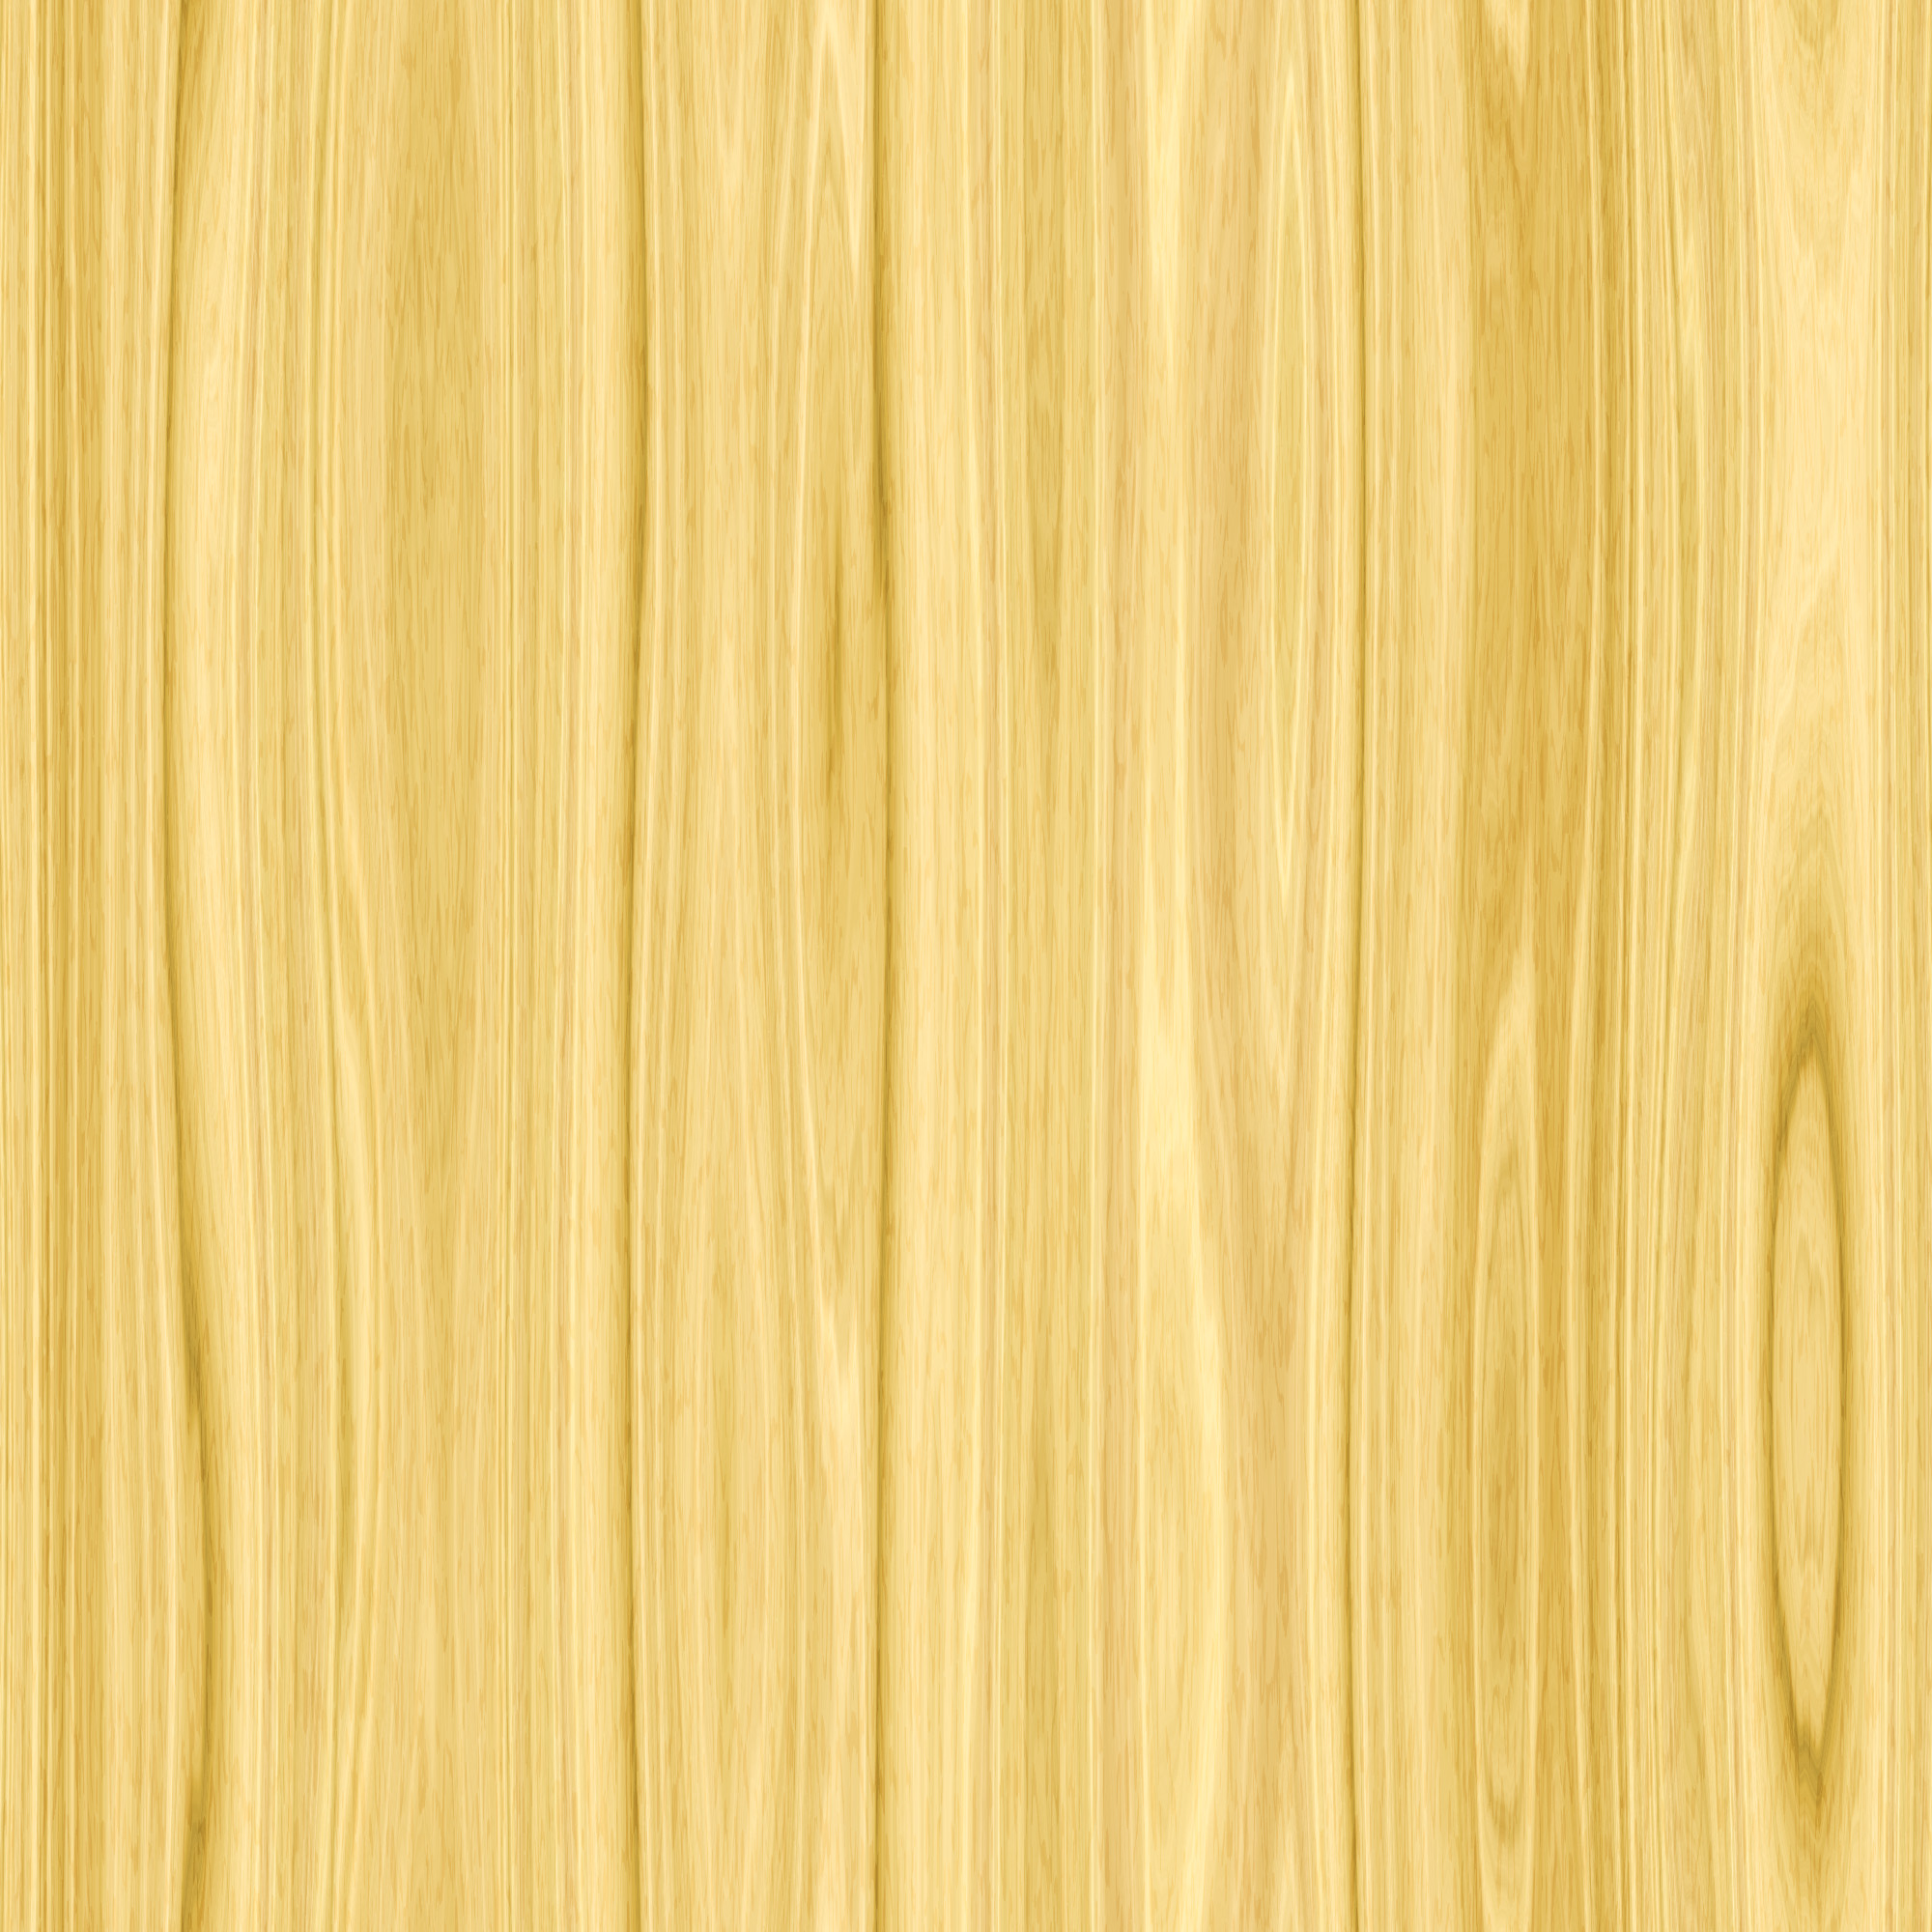 Với những đường vân gỗ tự nhiên đẹp mắt, chiếc tấm ảnh này sẽ khiến bạn muốn chiêm ngưỡng thật kỹ trước khi nhấn nút xem thêm. Nó sẽ đưa bạn đến với một thế giới của những tấm gỗ tự nhiên tuyệt đẹp, với những đường vân vàng và nâu tuyệt đẹp. Nếu bạn muốn khám phá thêm về vân gỗ tự nhiên này, hãy nhấn vào đây.